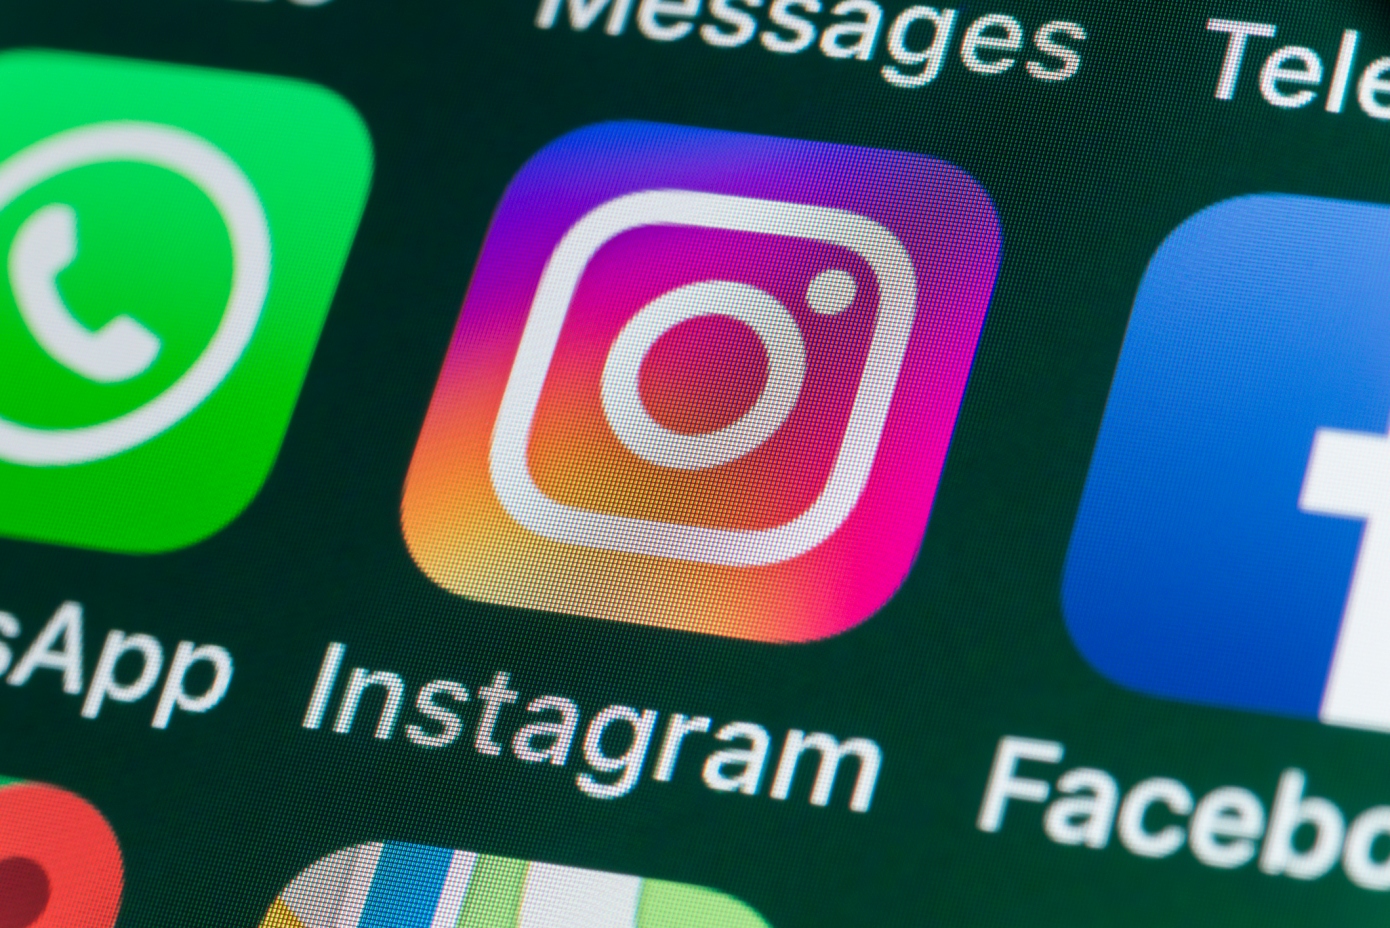 Οι συνδρομές δημιουργών του Instagram πλησιάζουν στην κυκλοφορία, αποκαλύπτει η καταχώρηση του App Store